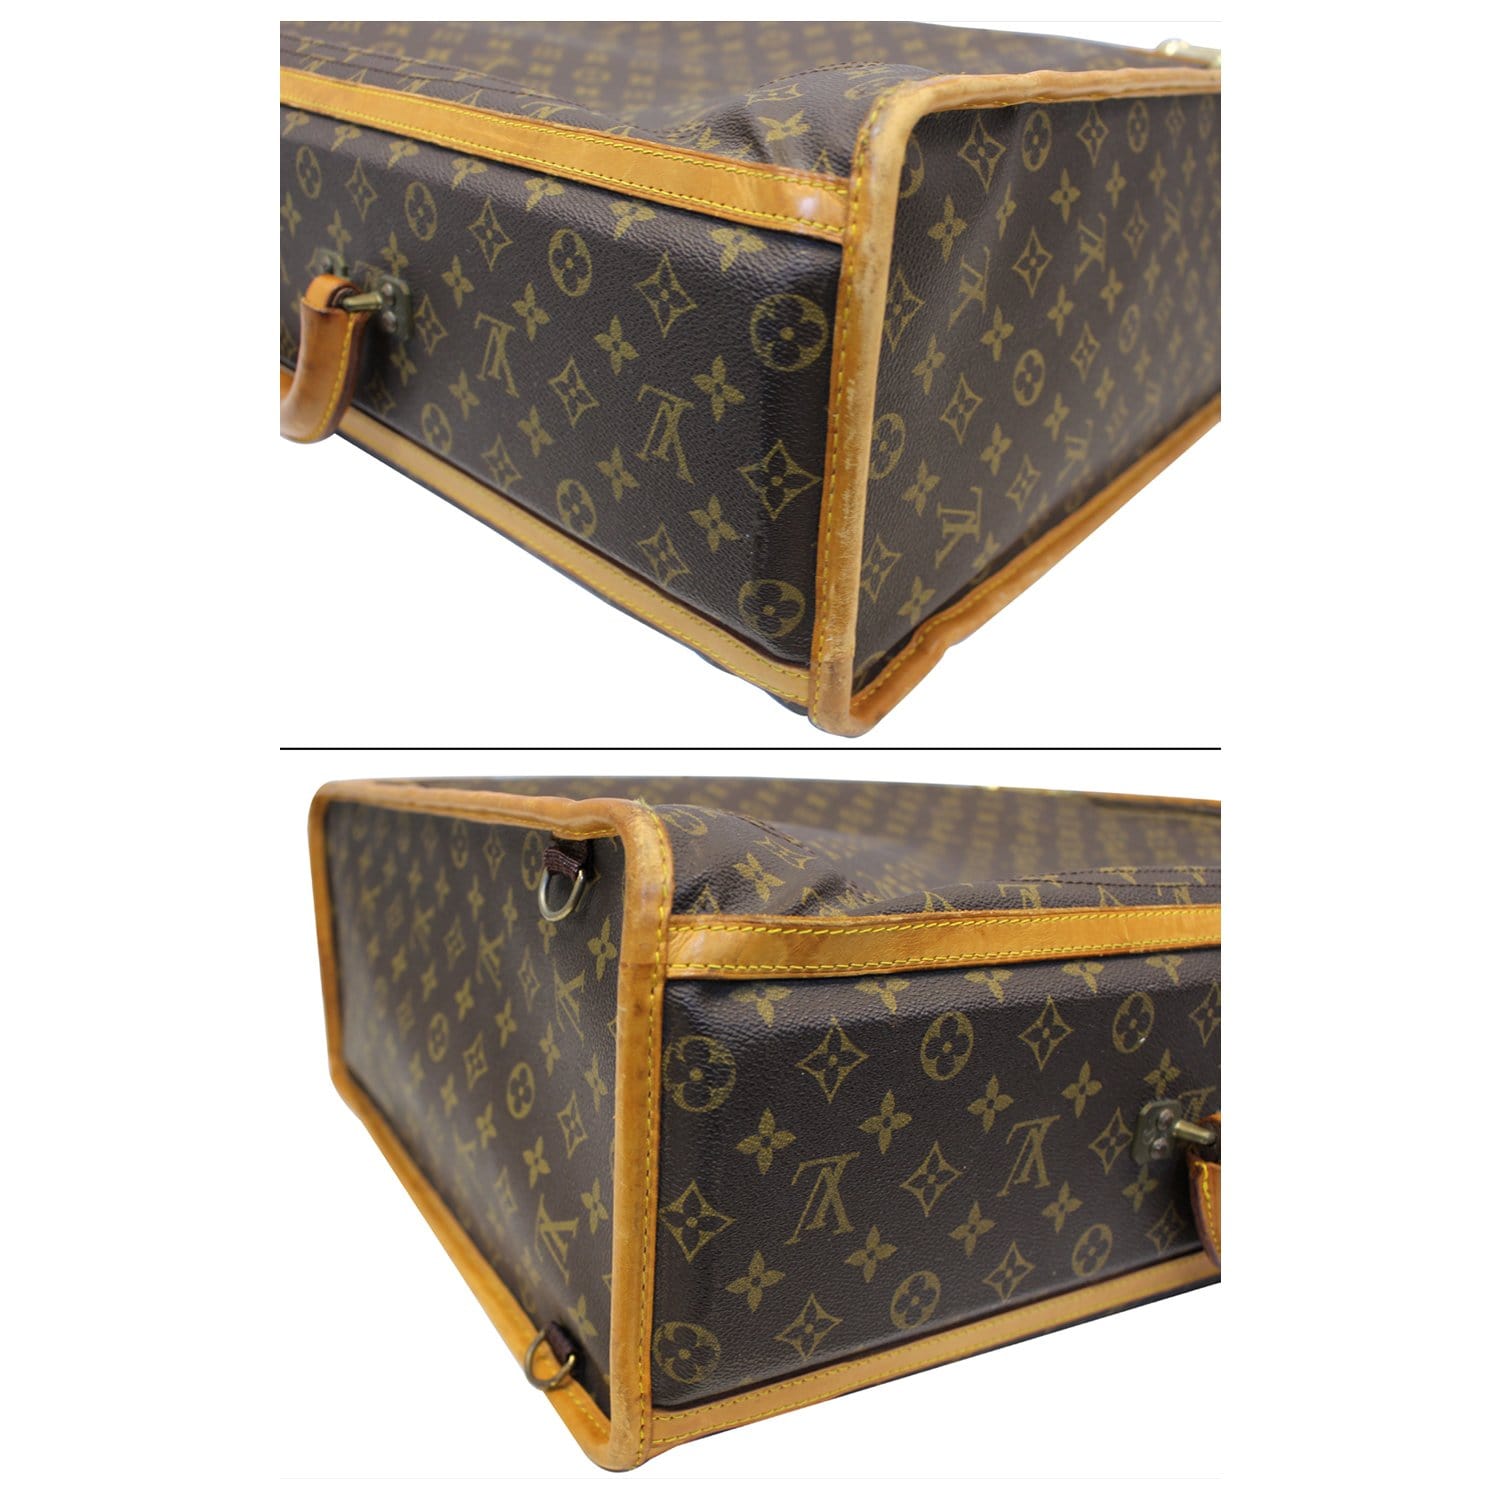 LOUIS VUITTON Monogram Canvas Gold Large Travel Suitcase Trunk